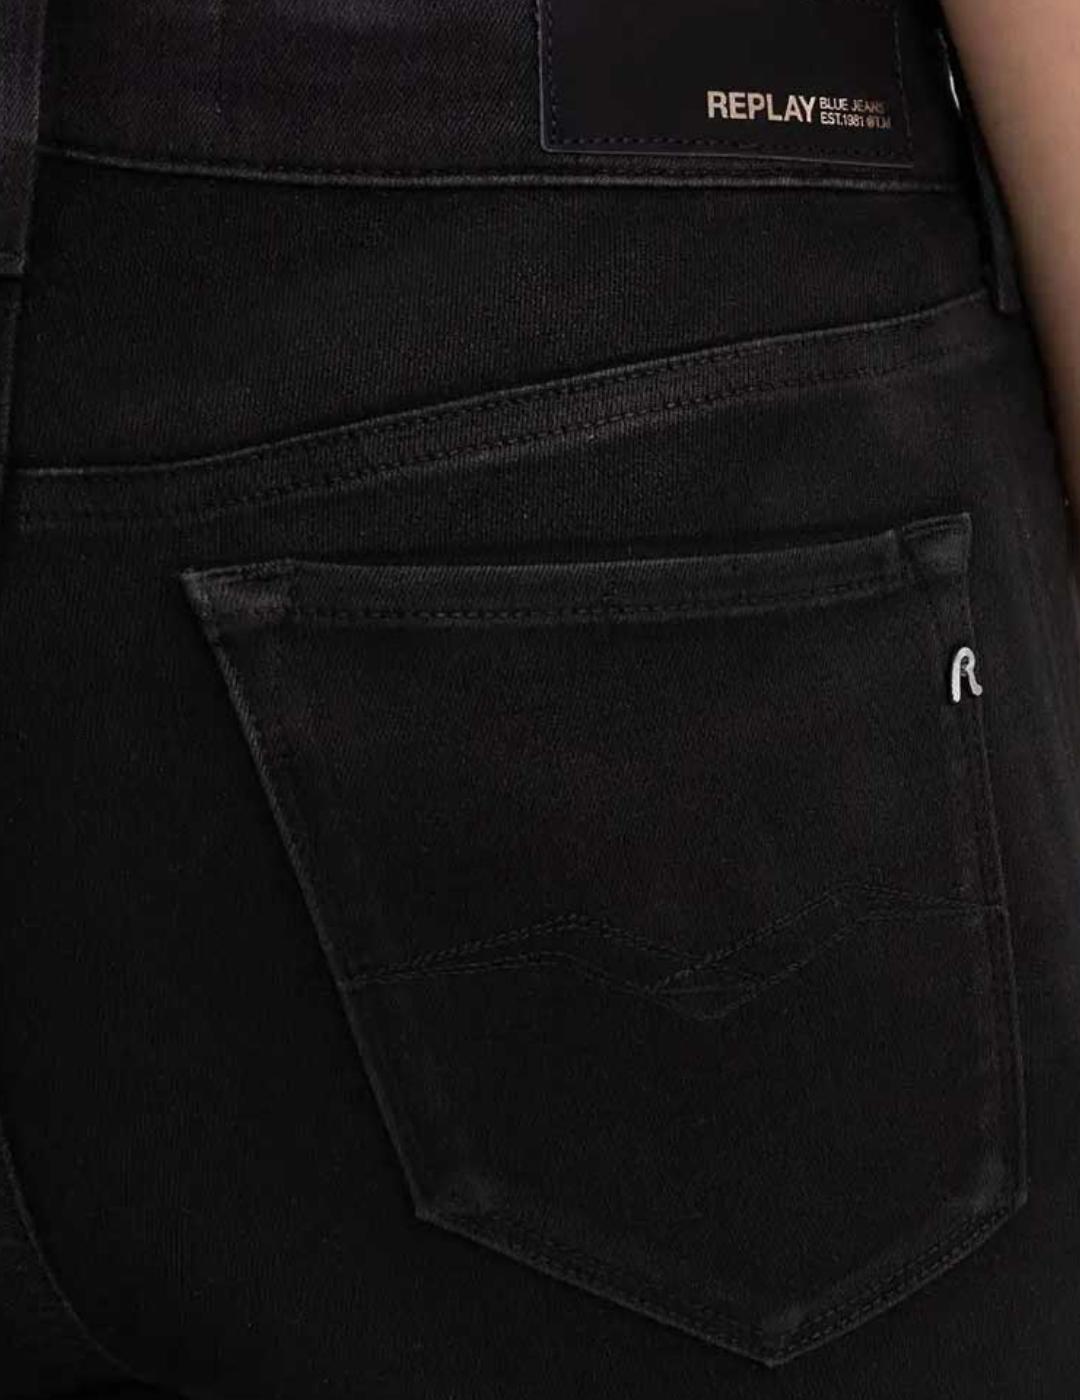 Pantalón Replay Luzien negro para mujer